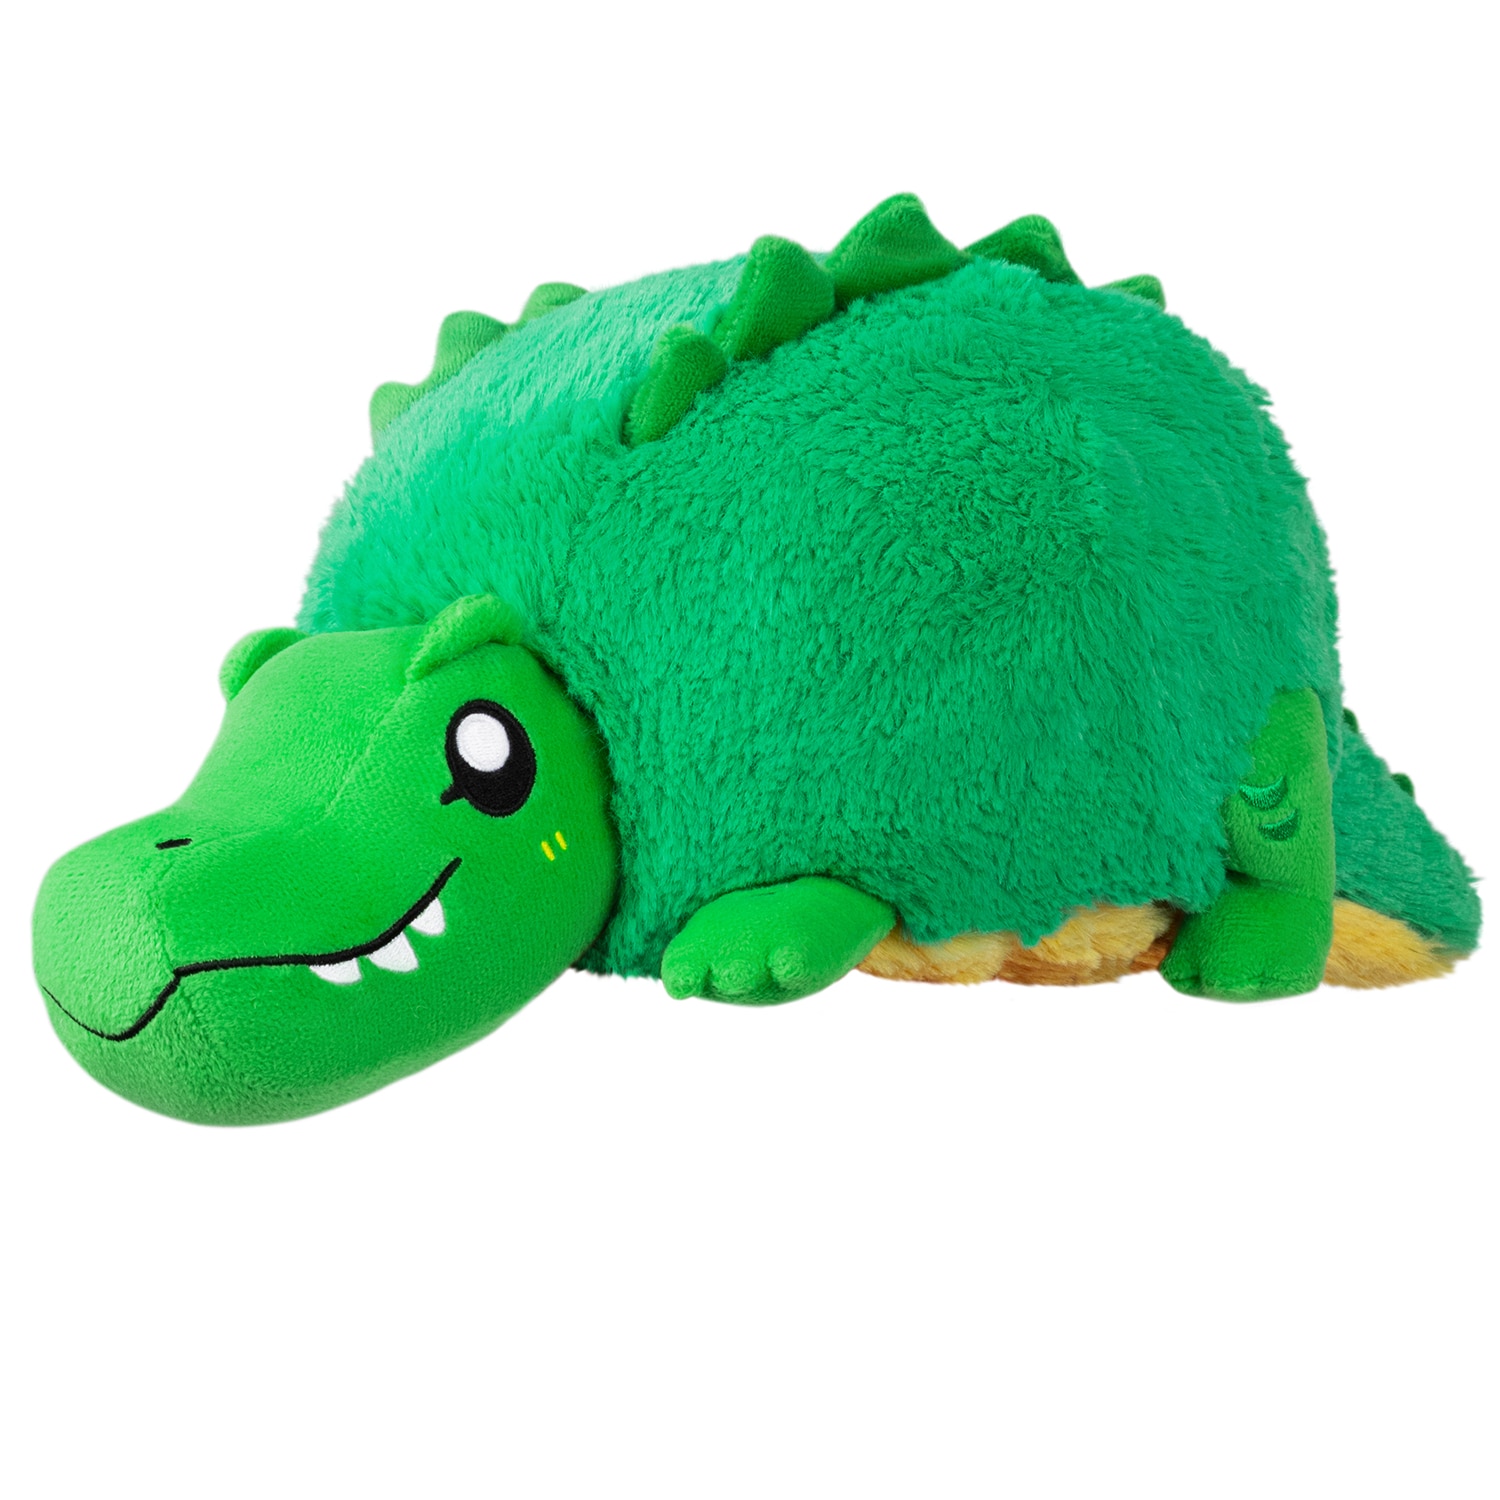 Mini Squishable Alligator